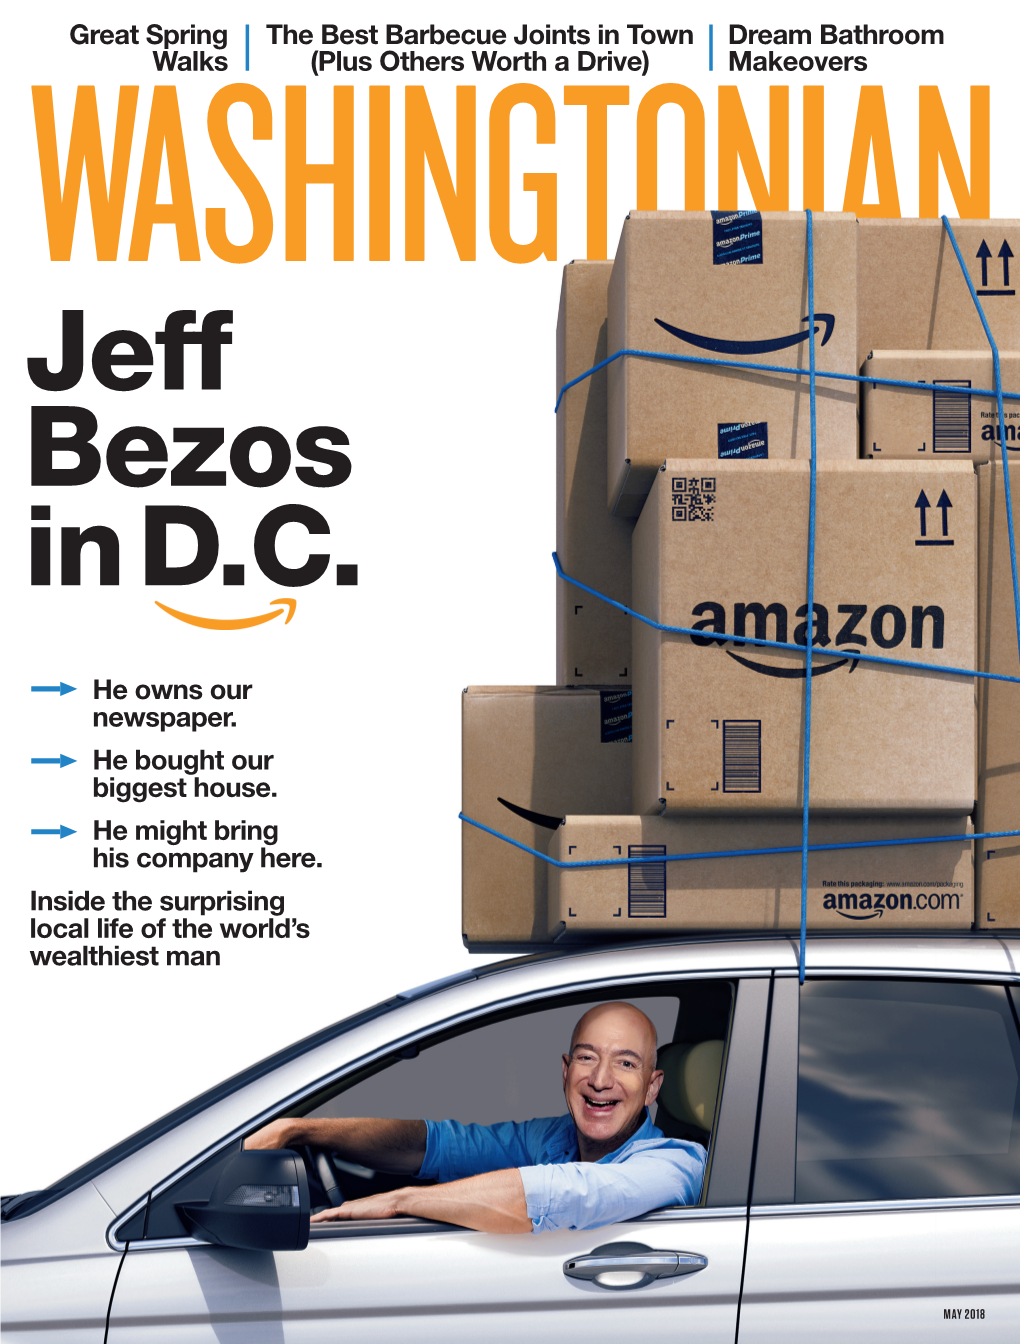 Jeff Bezos in D.C